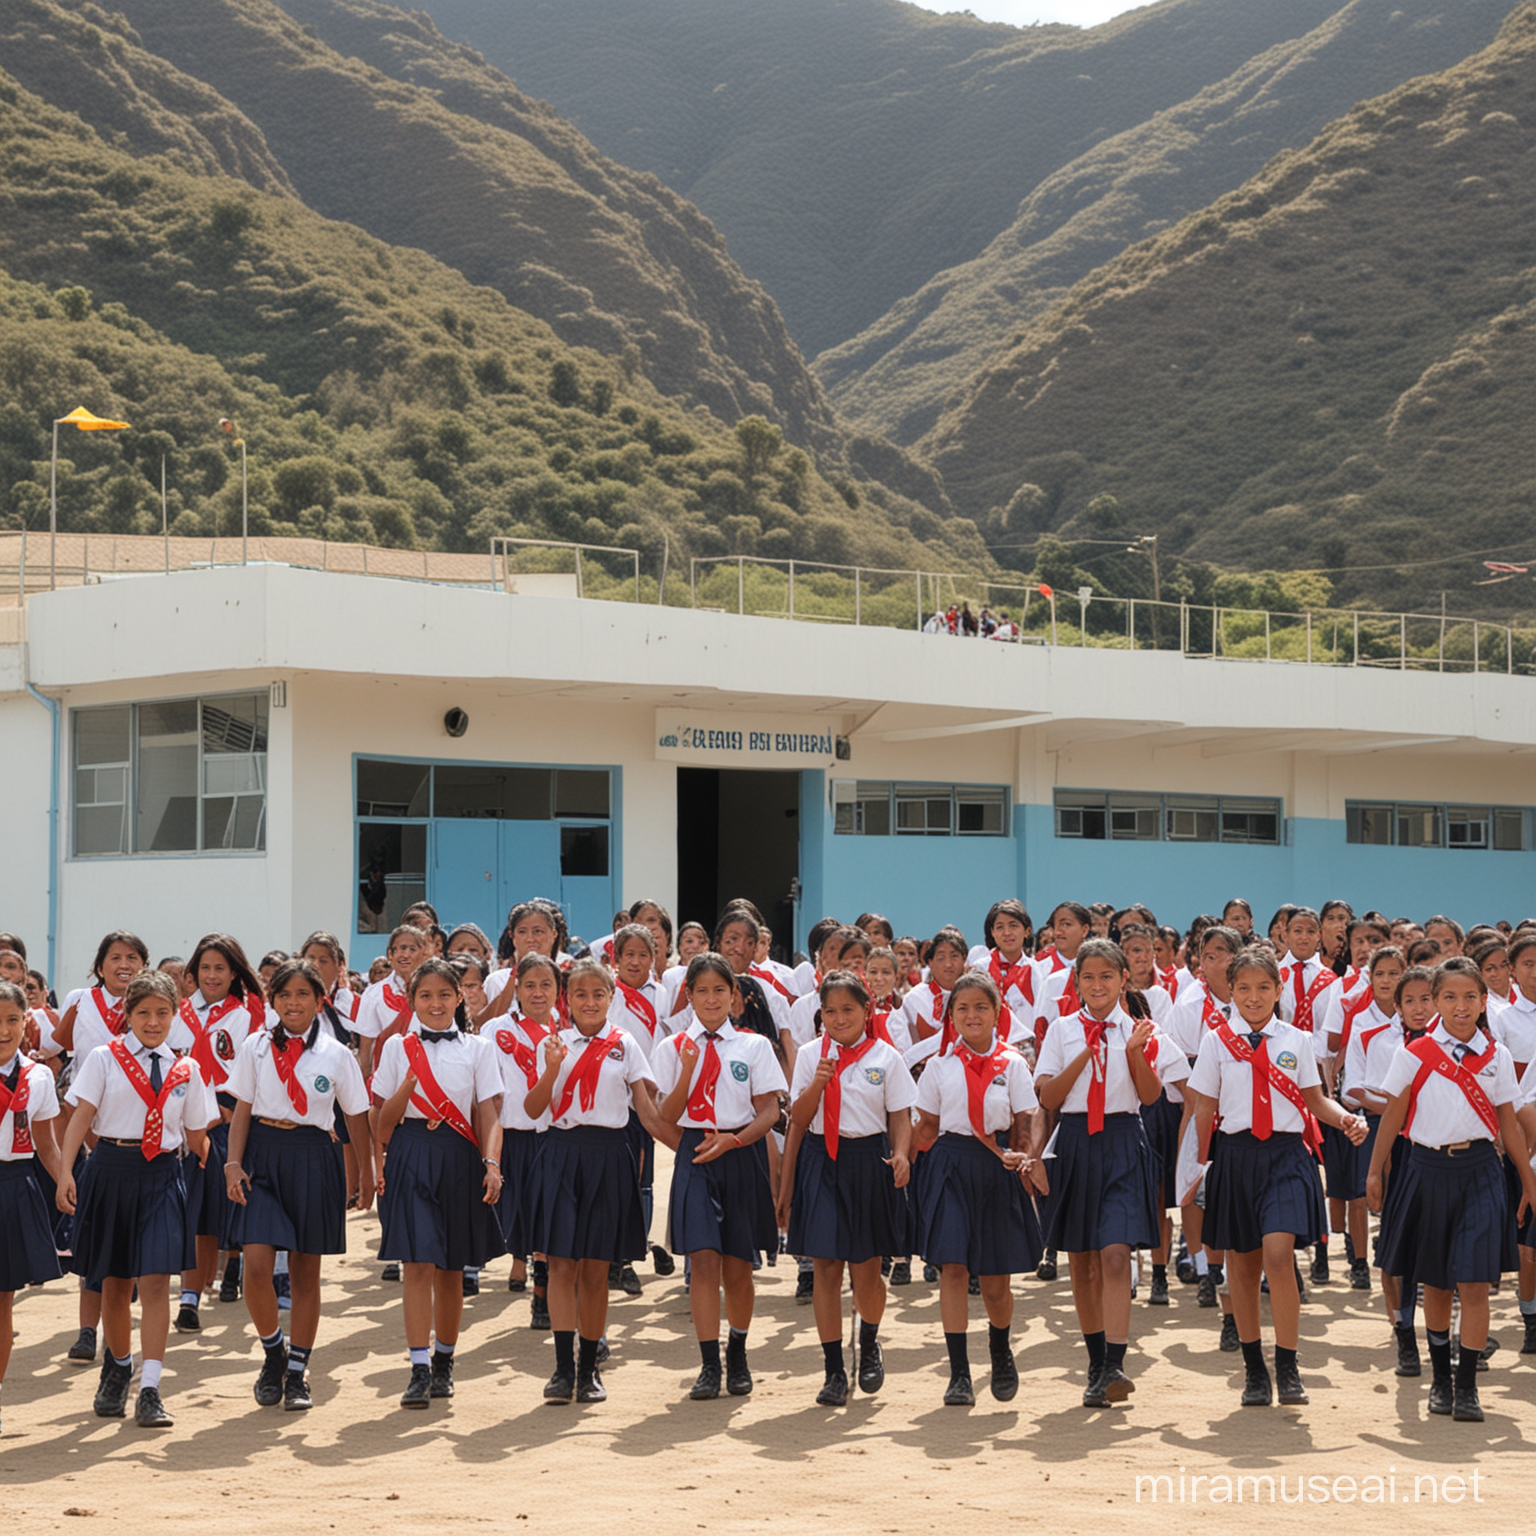 imagen de un colegio peruano recien inagurado